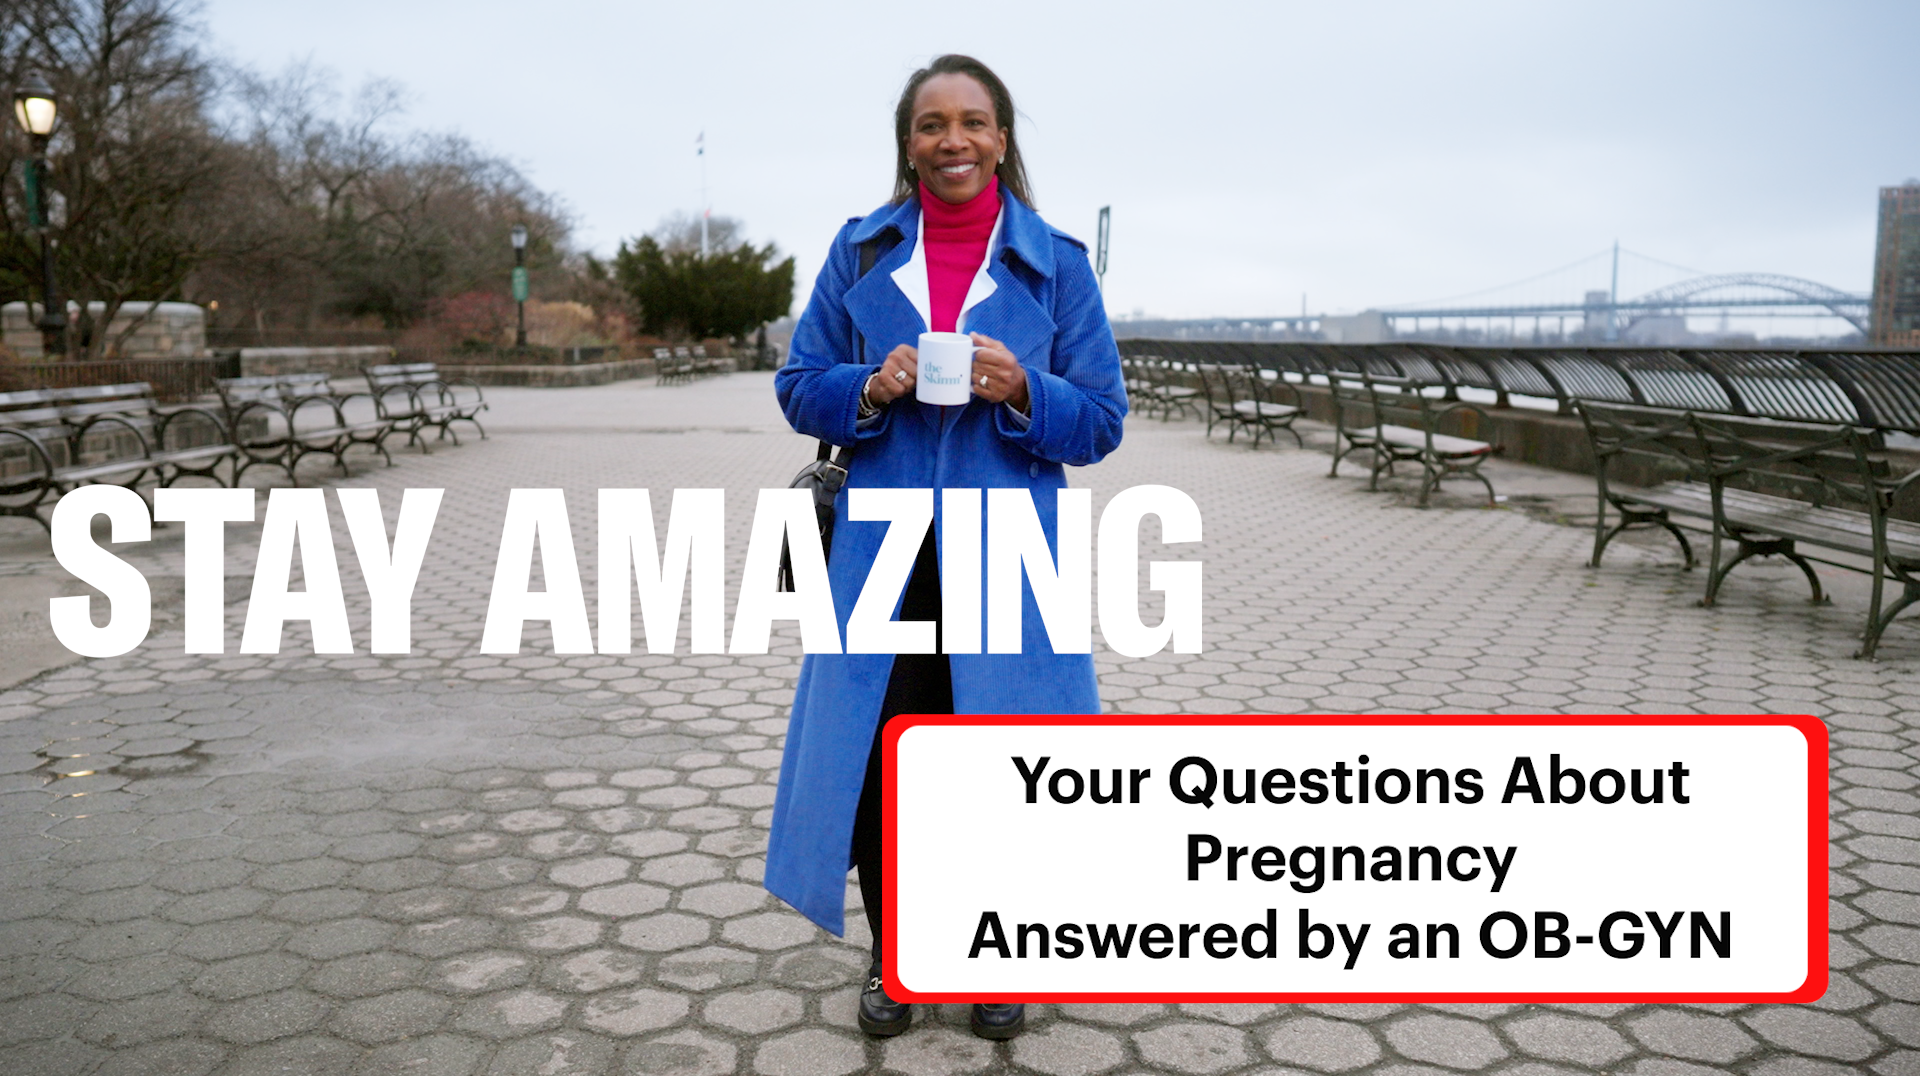 Stay Amazing with NewYork-Presbyterian: Pregnancy Image